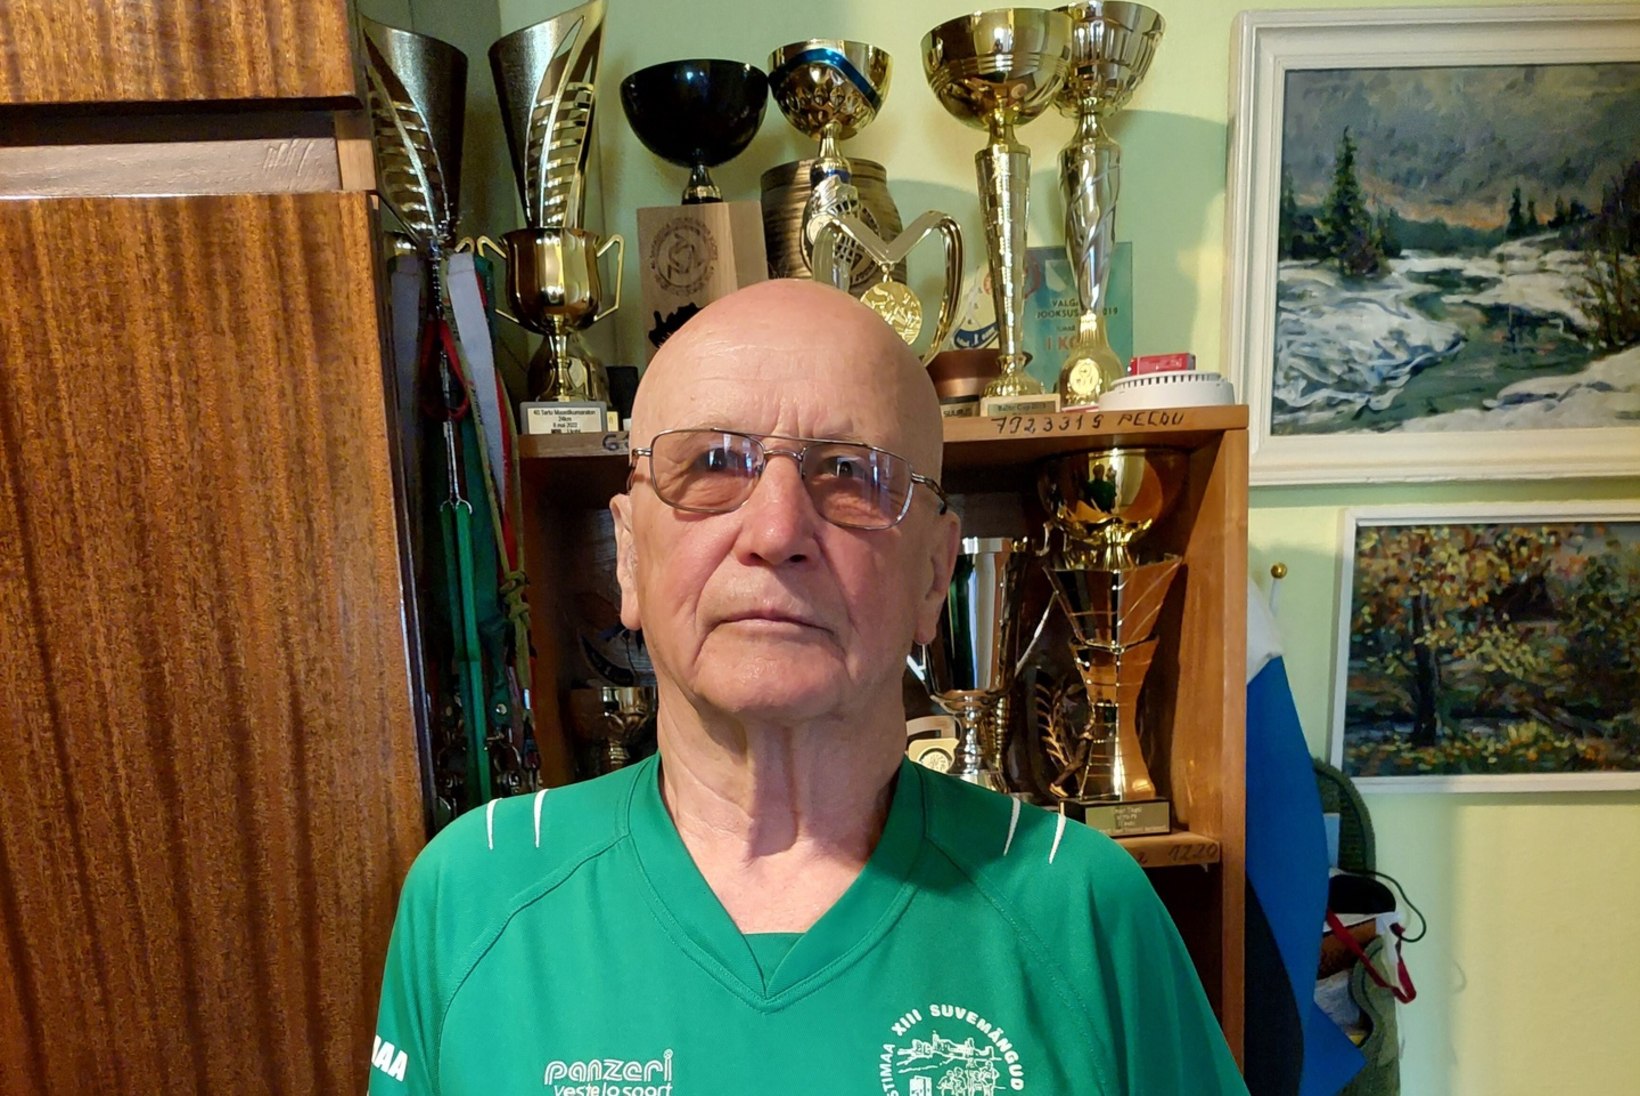 80aastane Ilmar napsab jooksuvõistlustel medaleid: „Liikumises on elu. Anname tuld!“